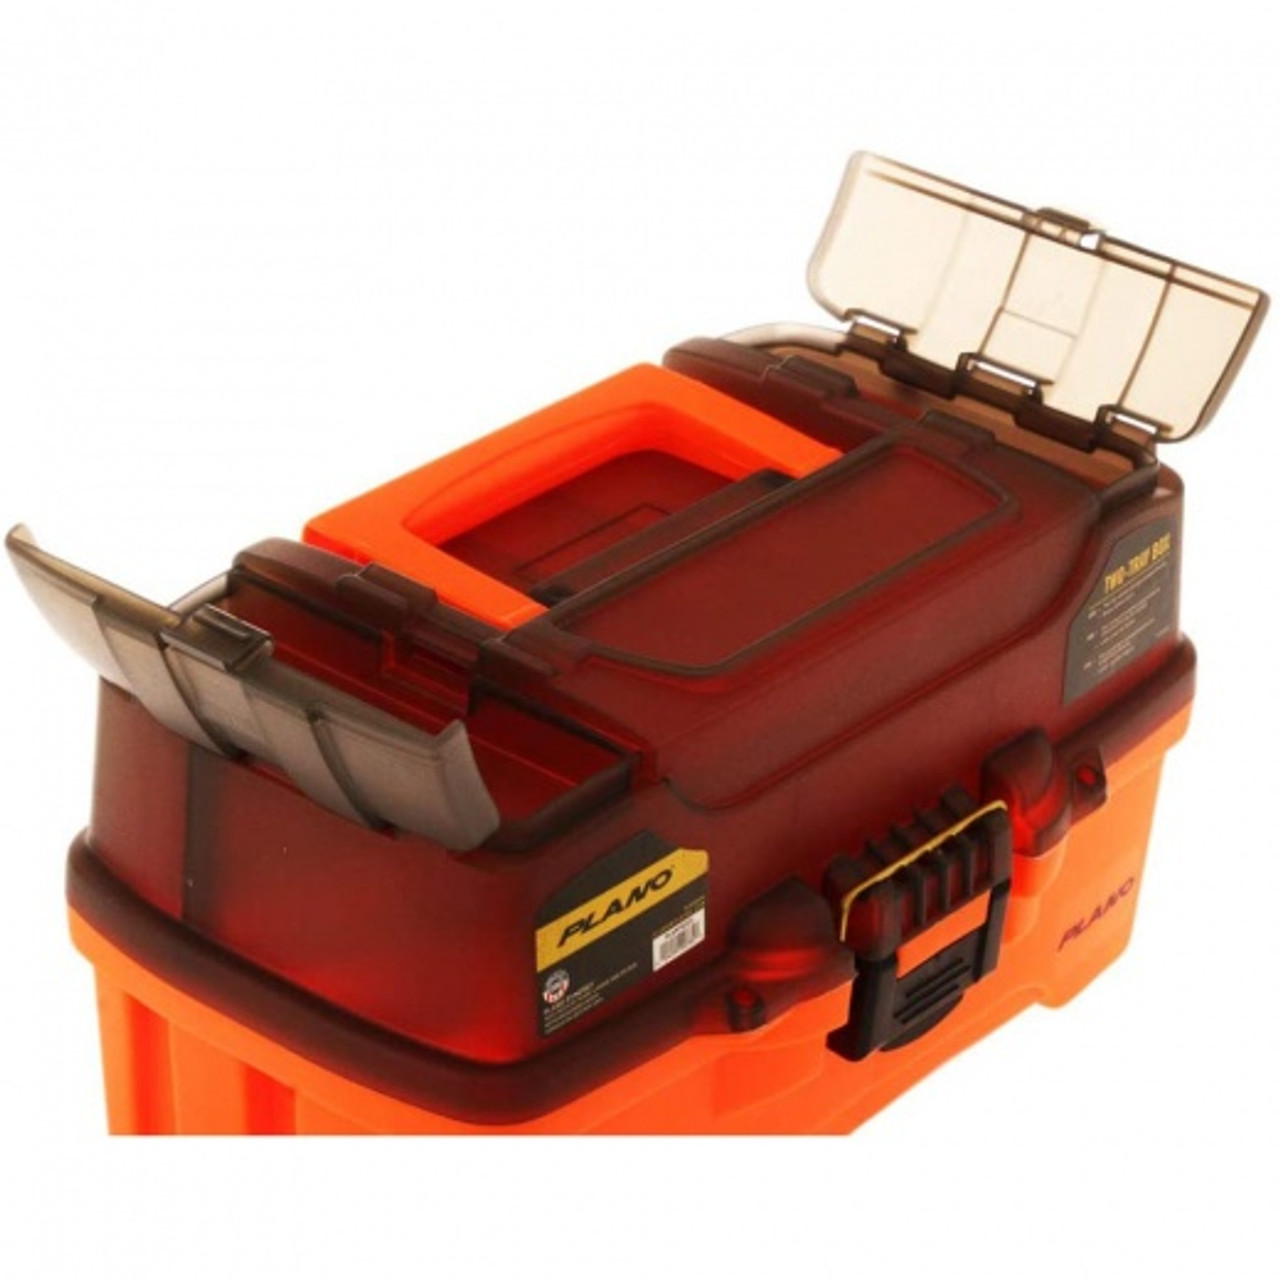 Plano Tackle Box 2 Tray - Bright Orange